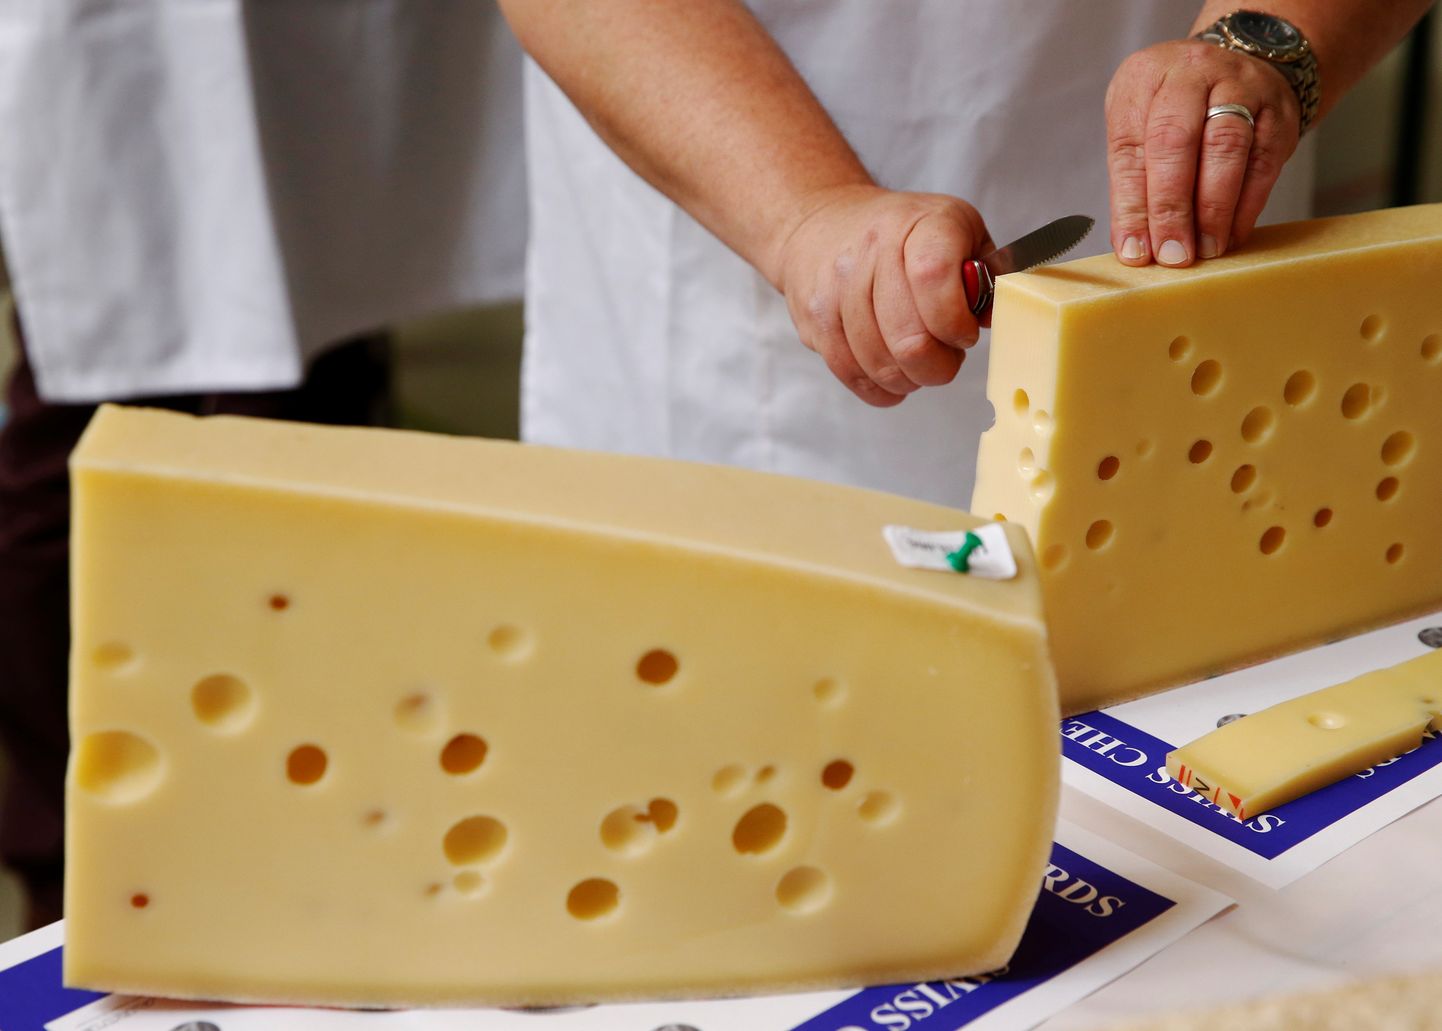 Šveitsi juustu mudel näitab, kuidas erinevad meetmed koosmõjus koroonaviirusest nagu üksteise otsa laotud juustuviilud võitu saada aitavad.